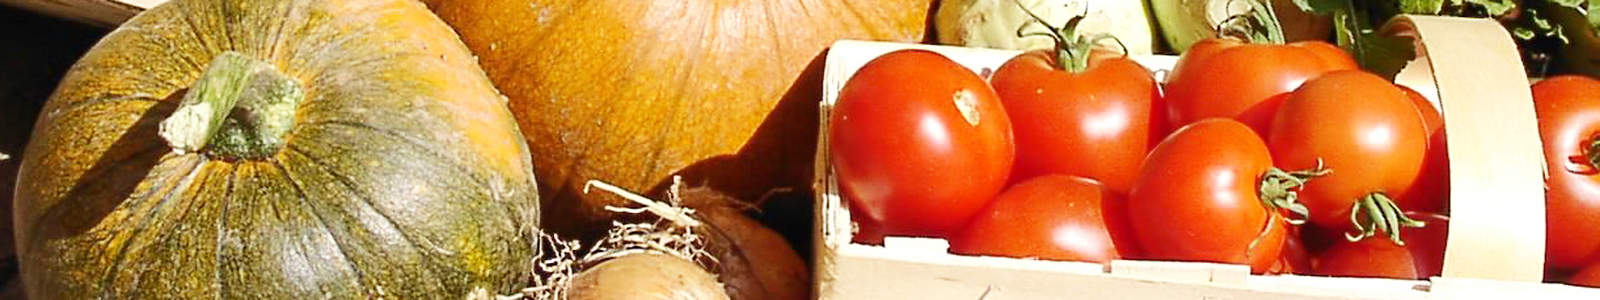 Kürbisse und Tomaten ©DLR